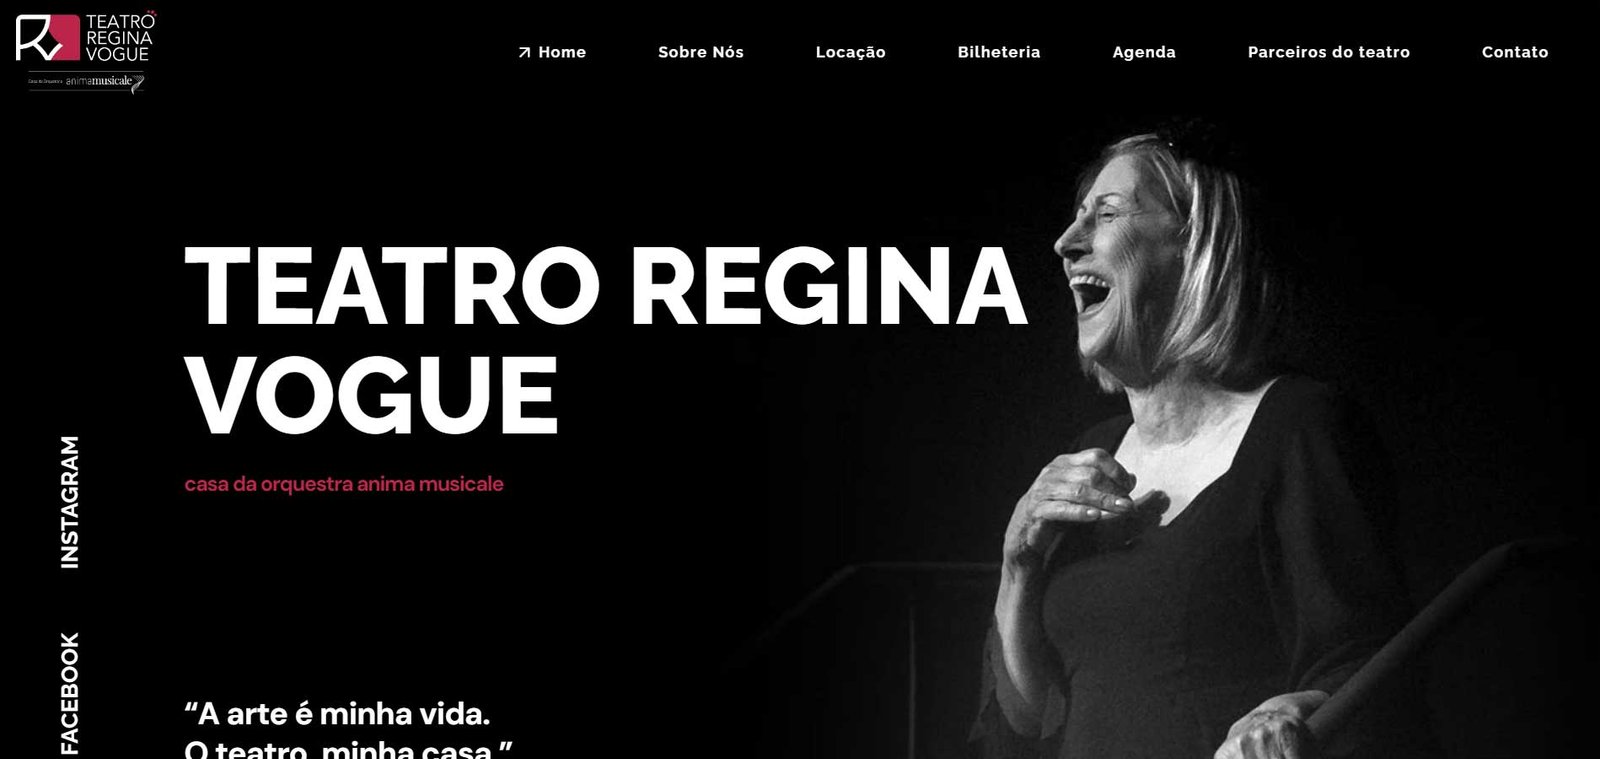 Regina Vogue  Teatro